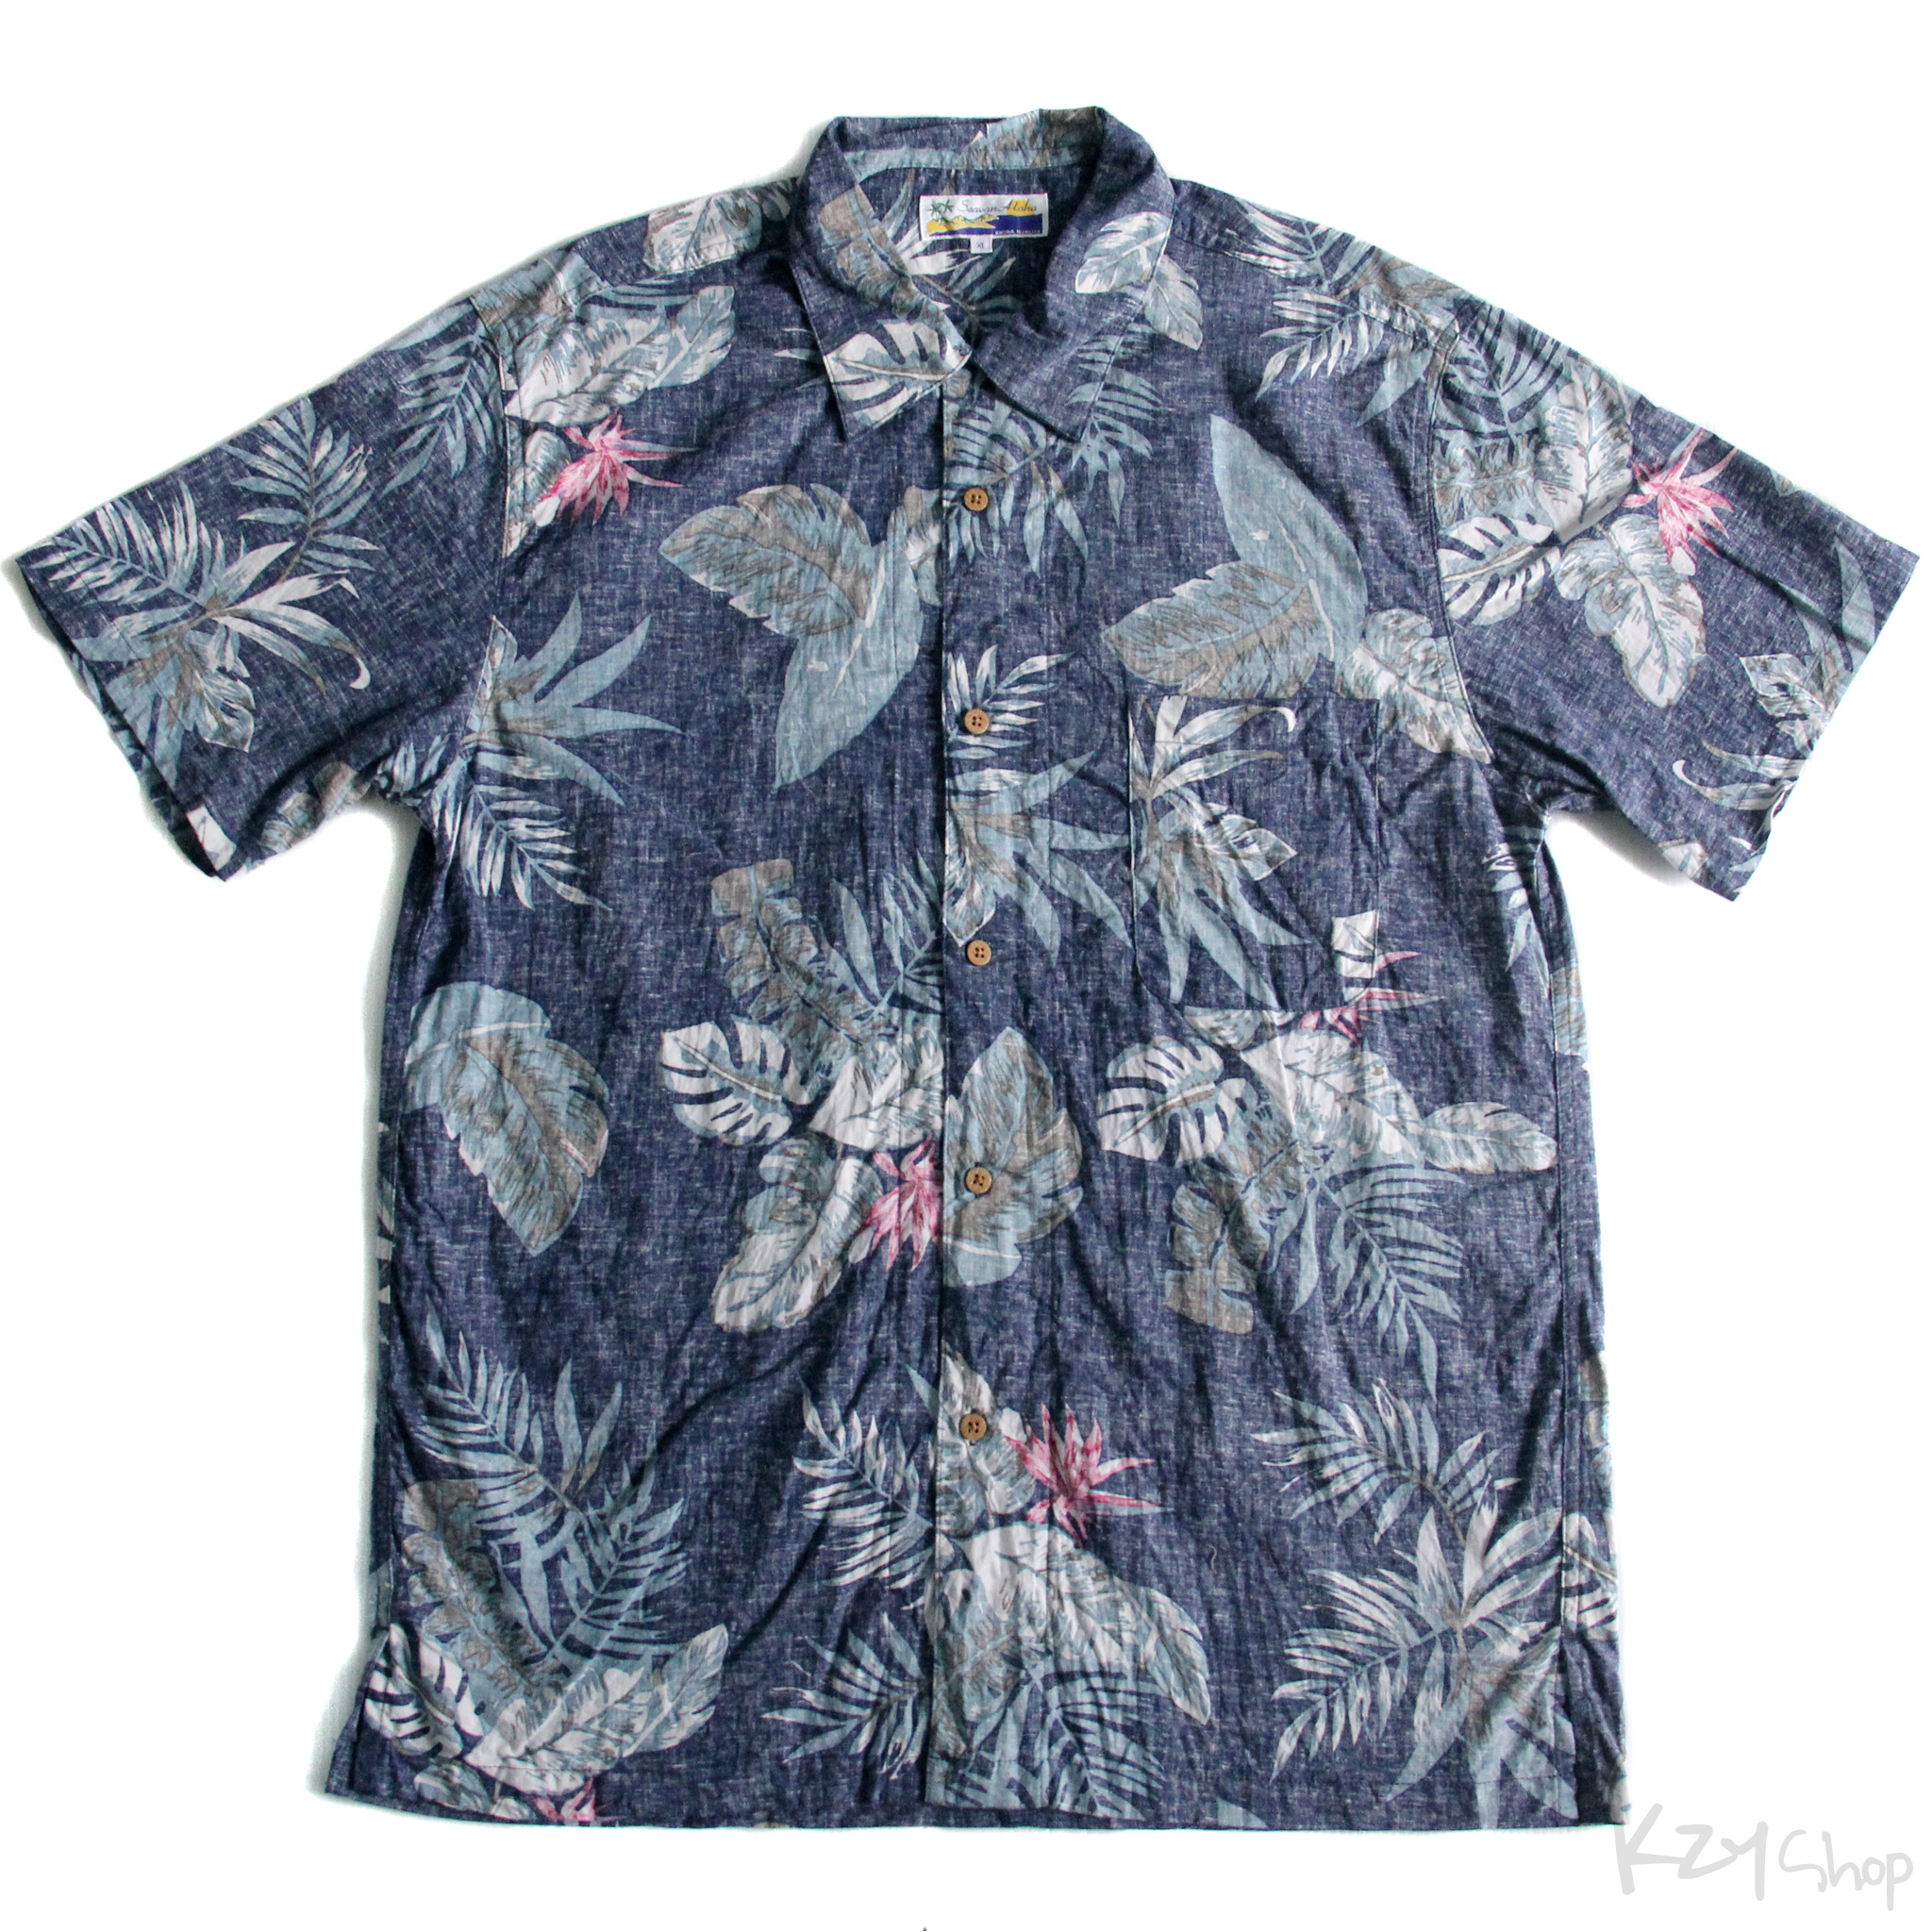 เสื้อฮาวาย Seavan Aloha ลาย ดอกไม้ ใบไม้